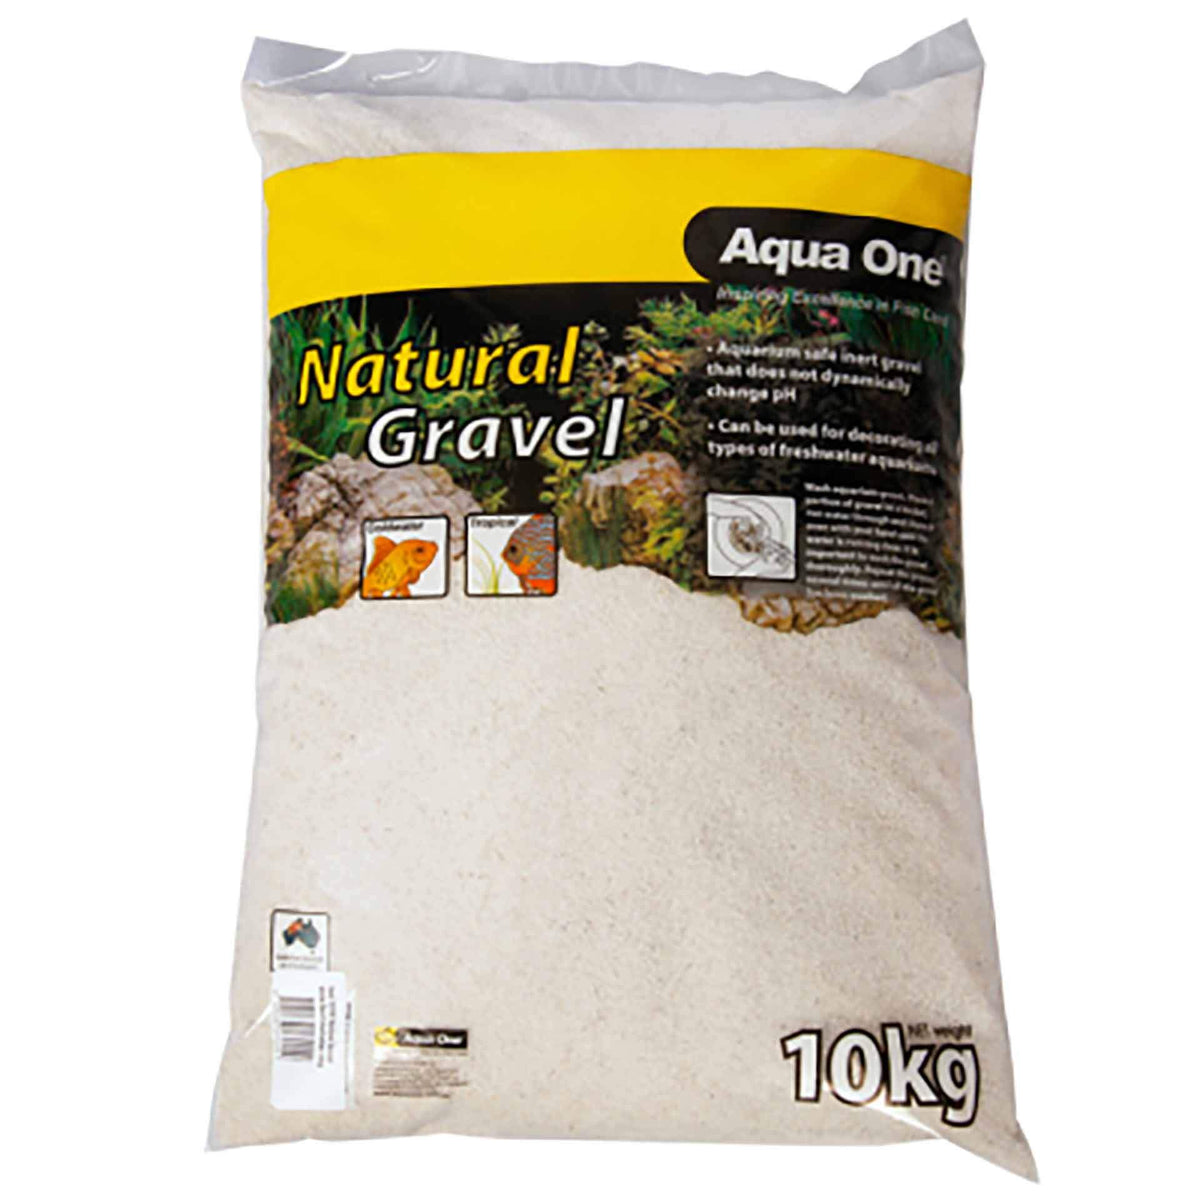 Aqua One Natural Gravel White Sand Australian 10kg (White) **